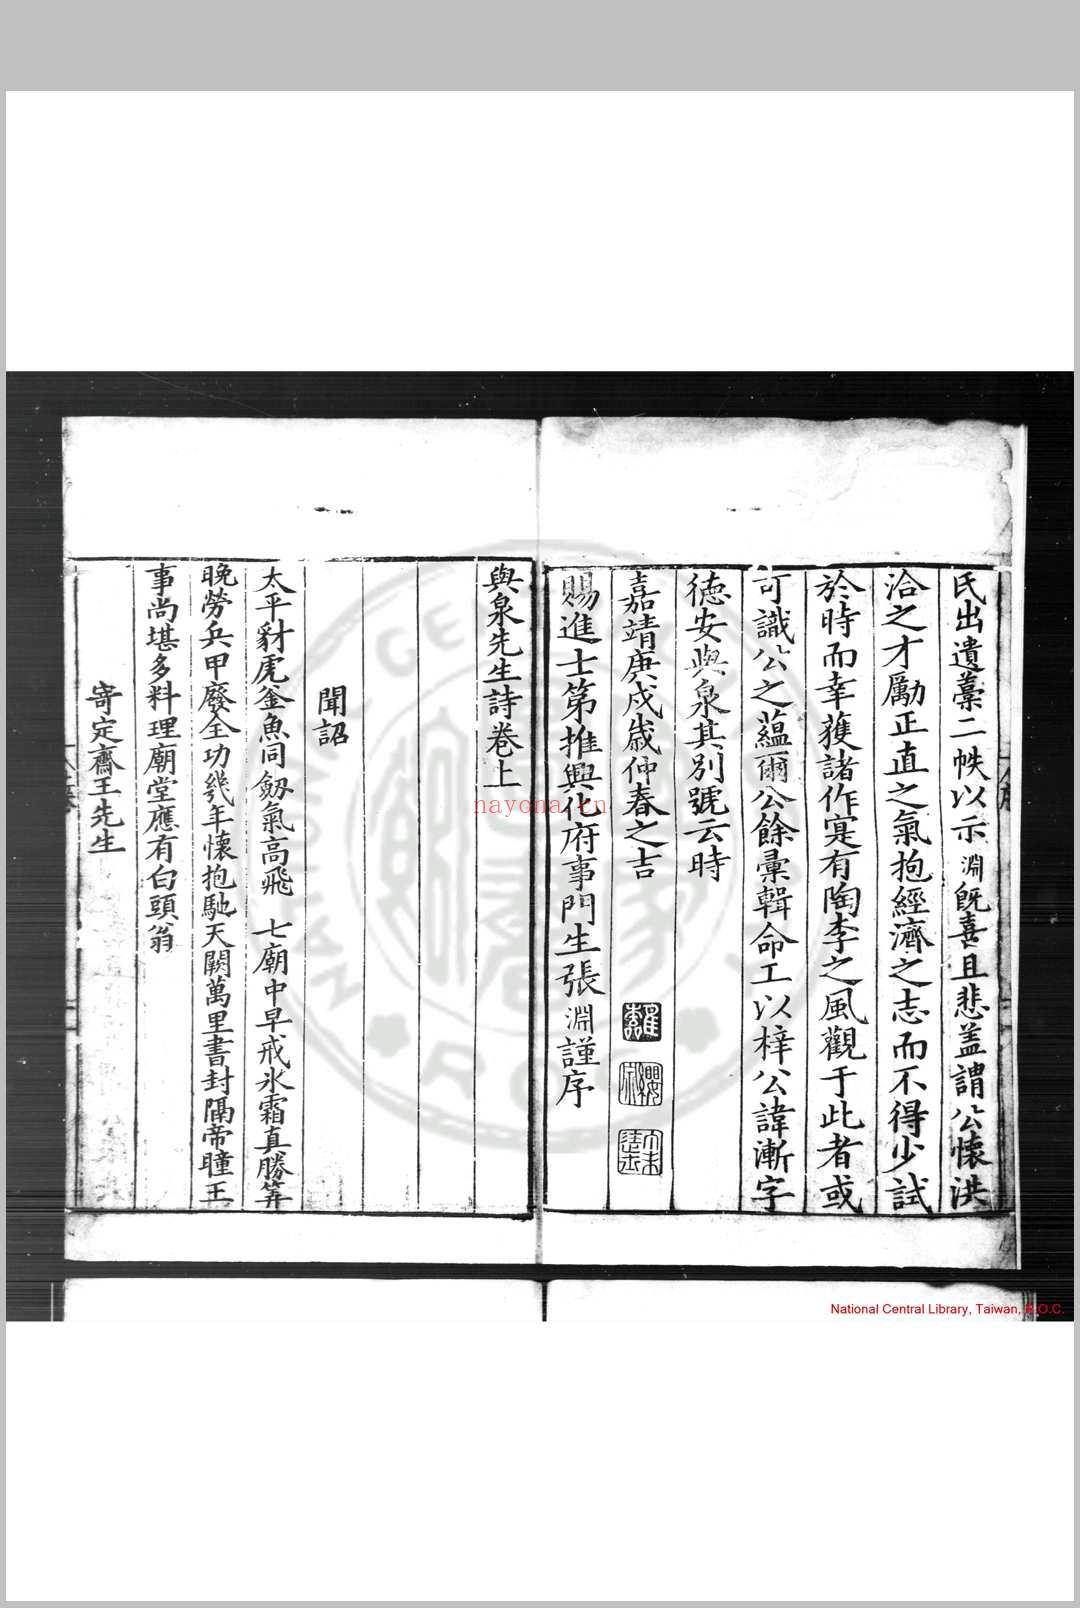 与泉先生集 (明)徐渐撰 明嘉靖庚戌(二十九年, 1550)刊本